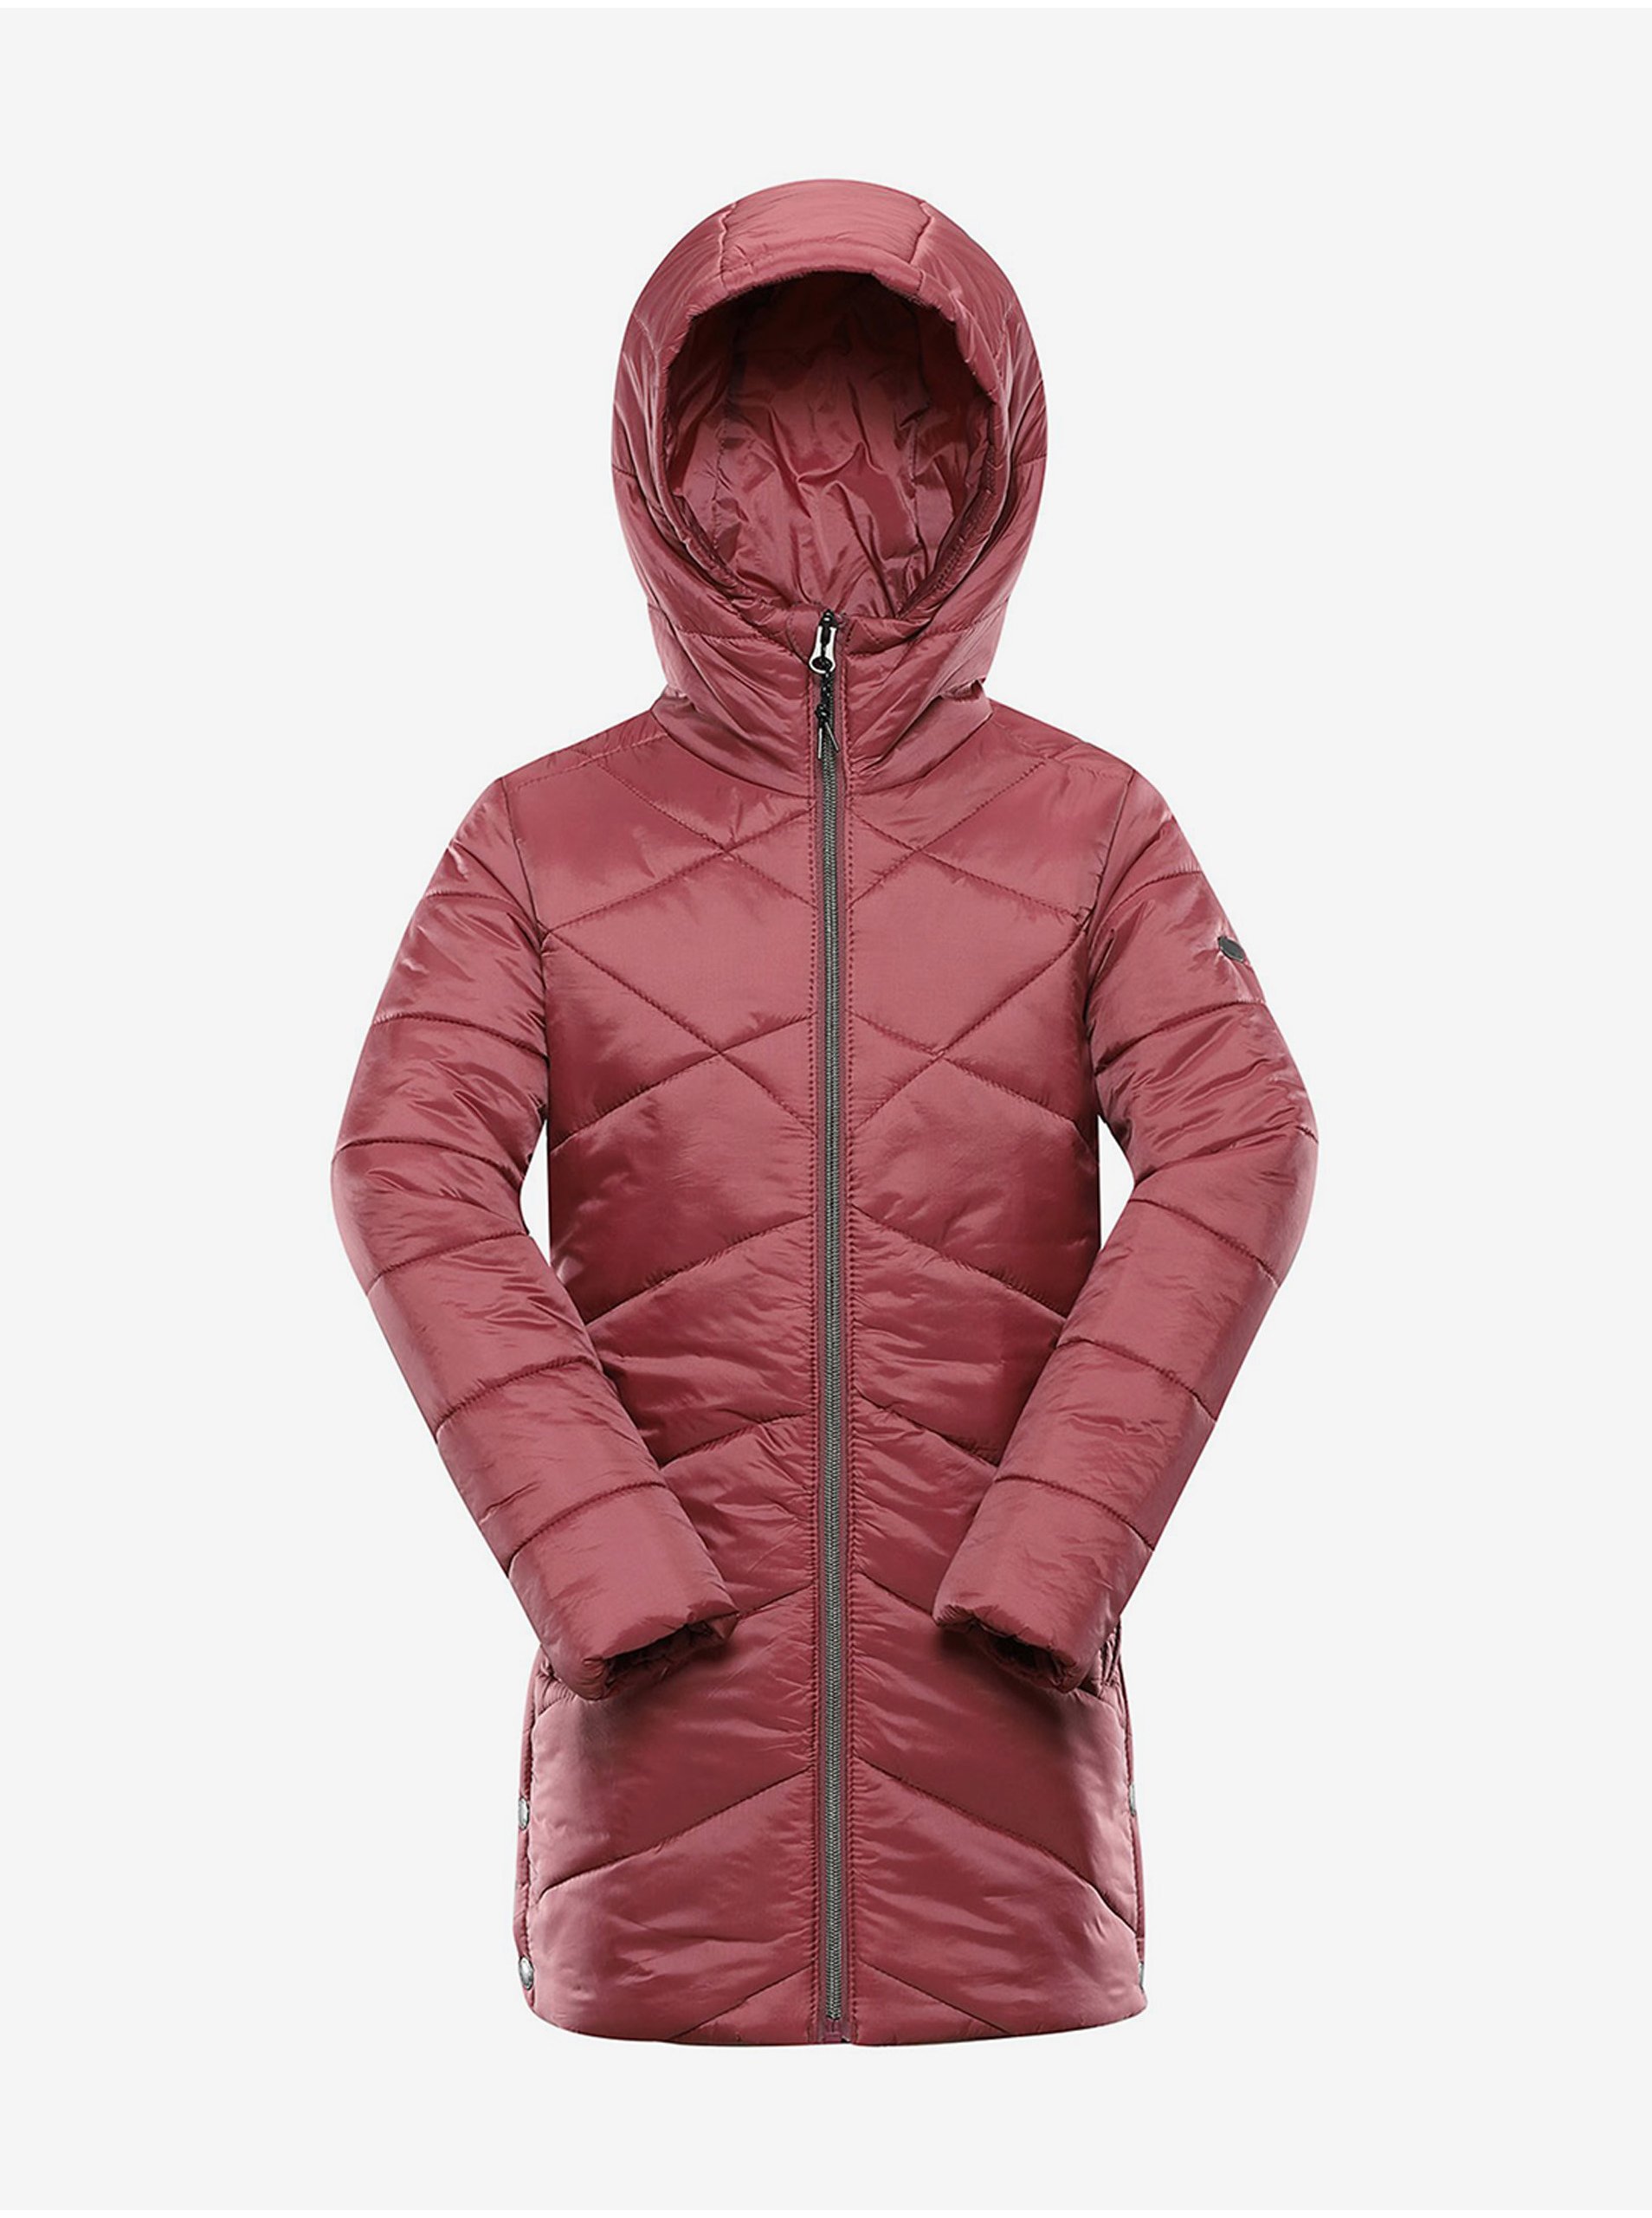 E-shop Tmavě růžový holčičí zimní prošívaný kabát ALPINE PRO TABAELO